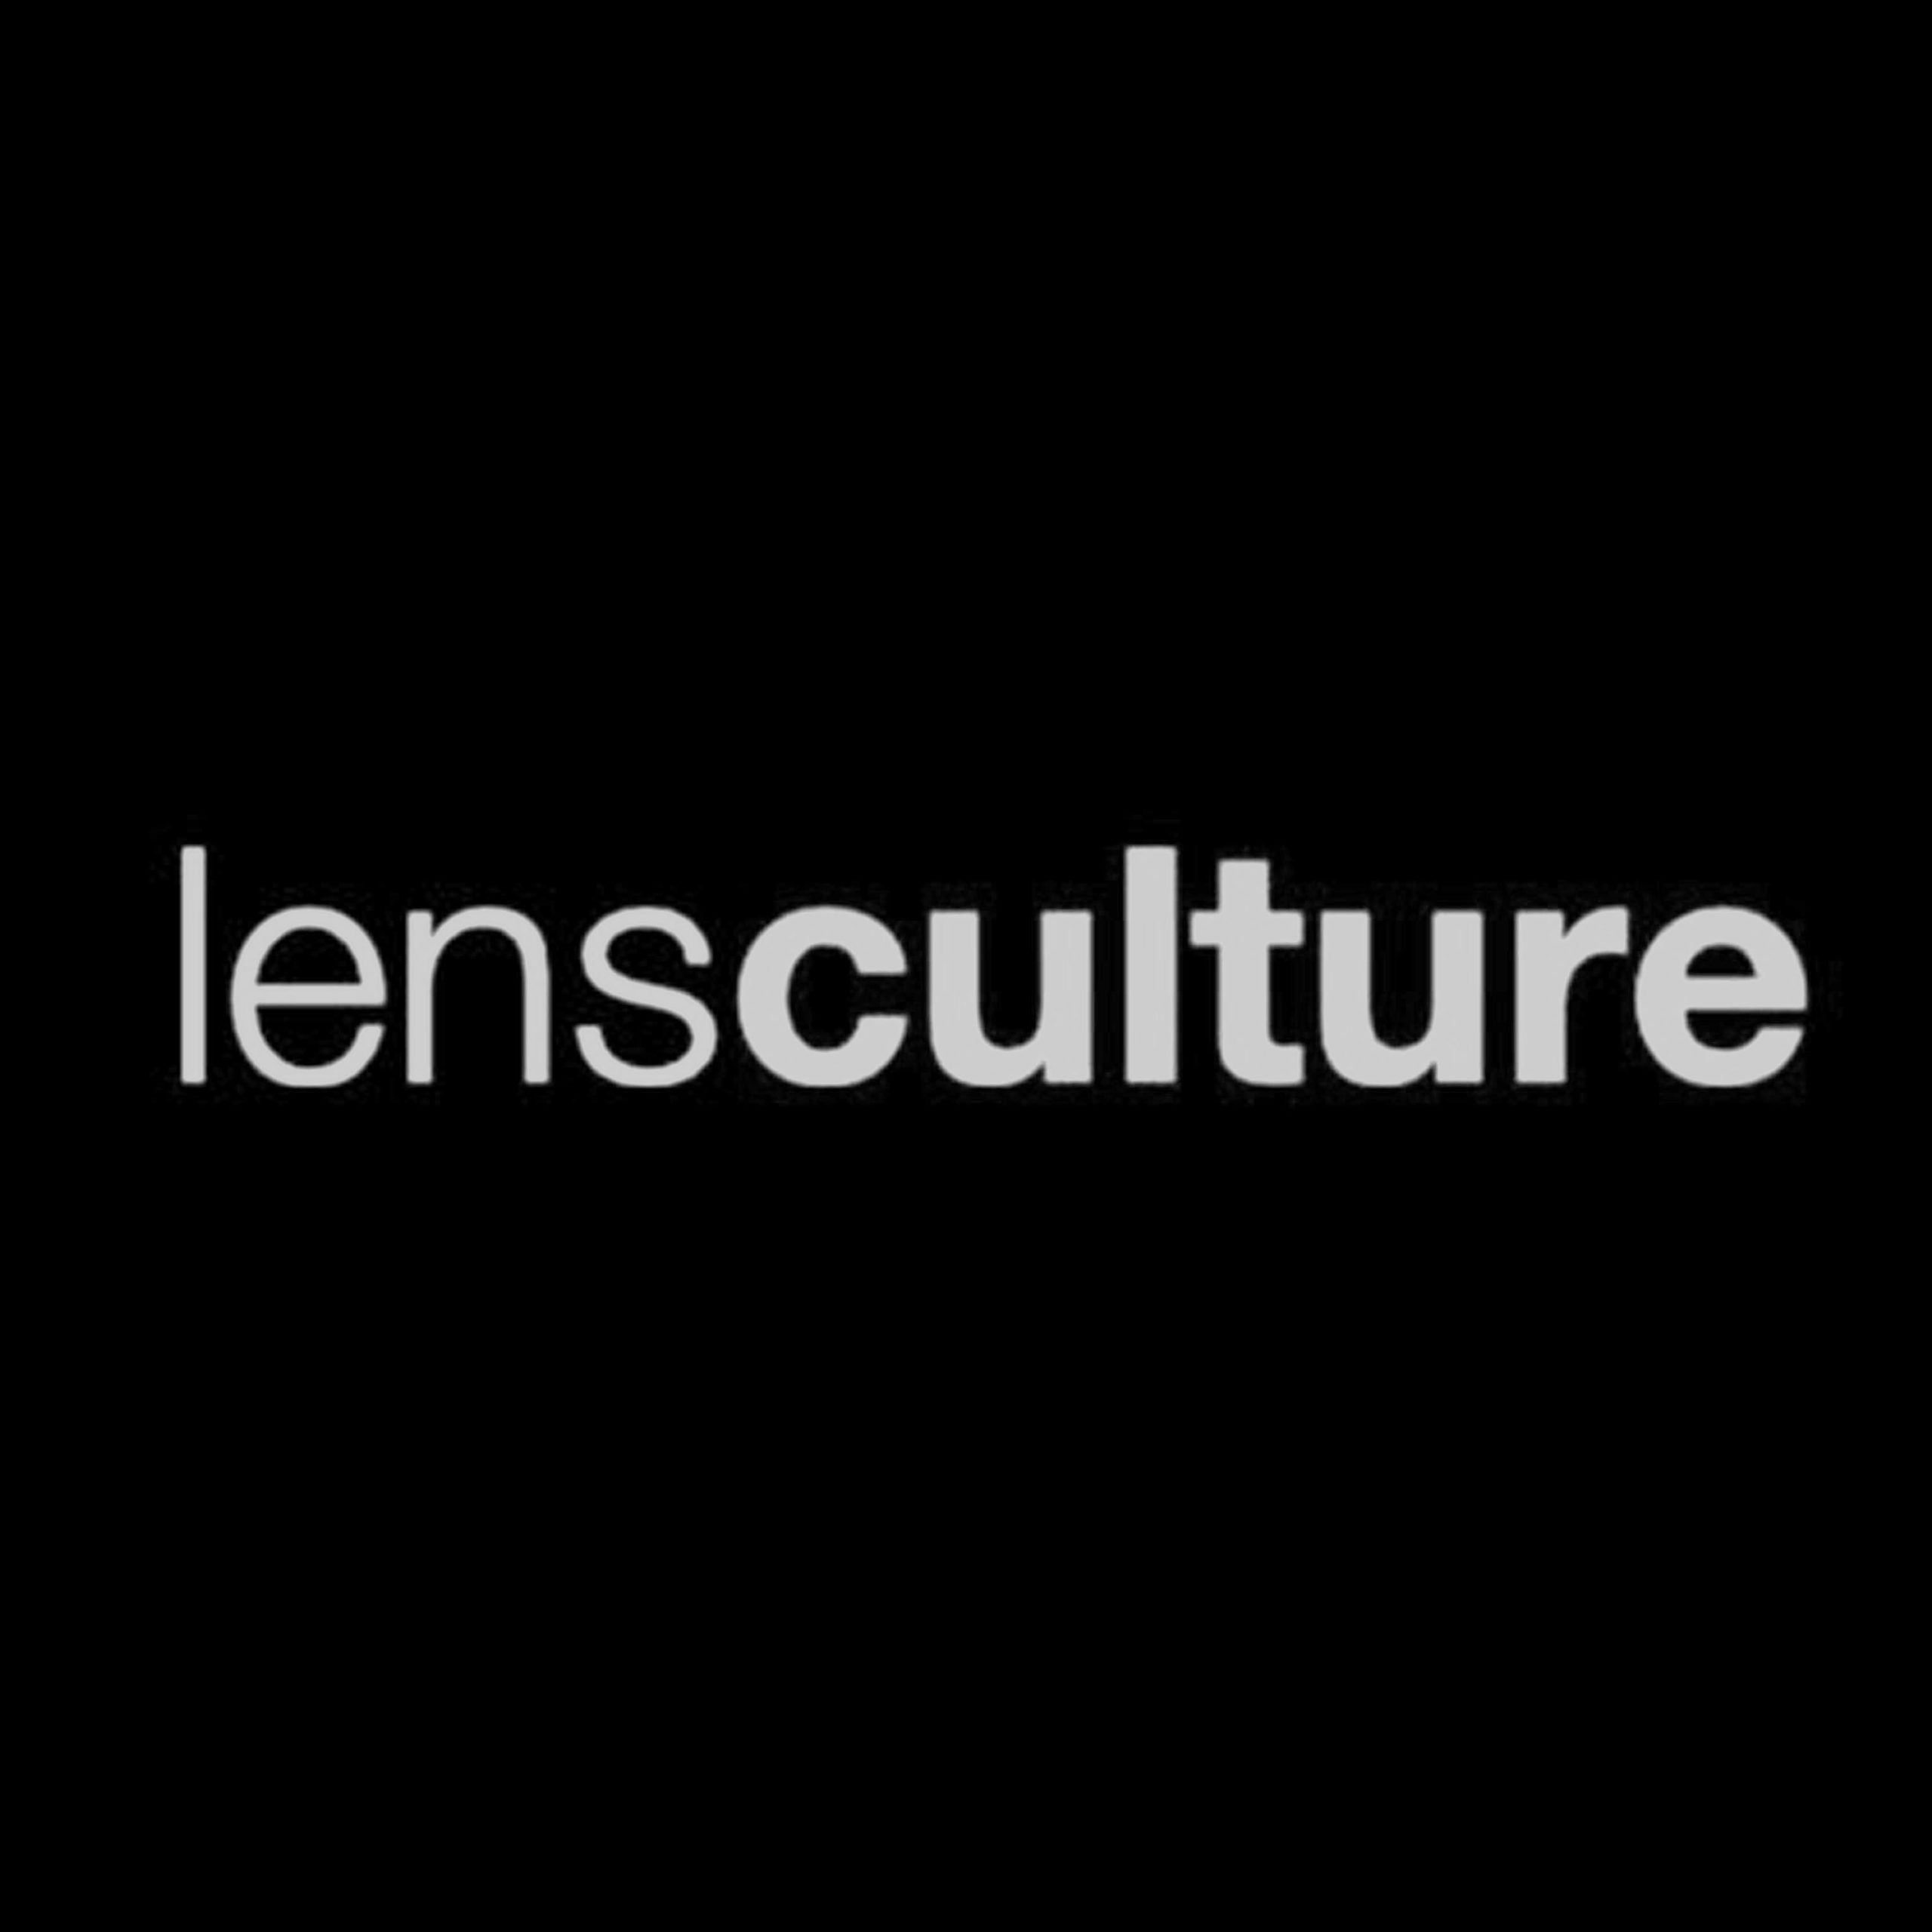 Lens Cultures